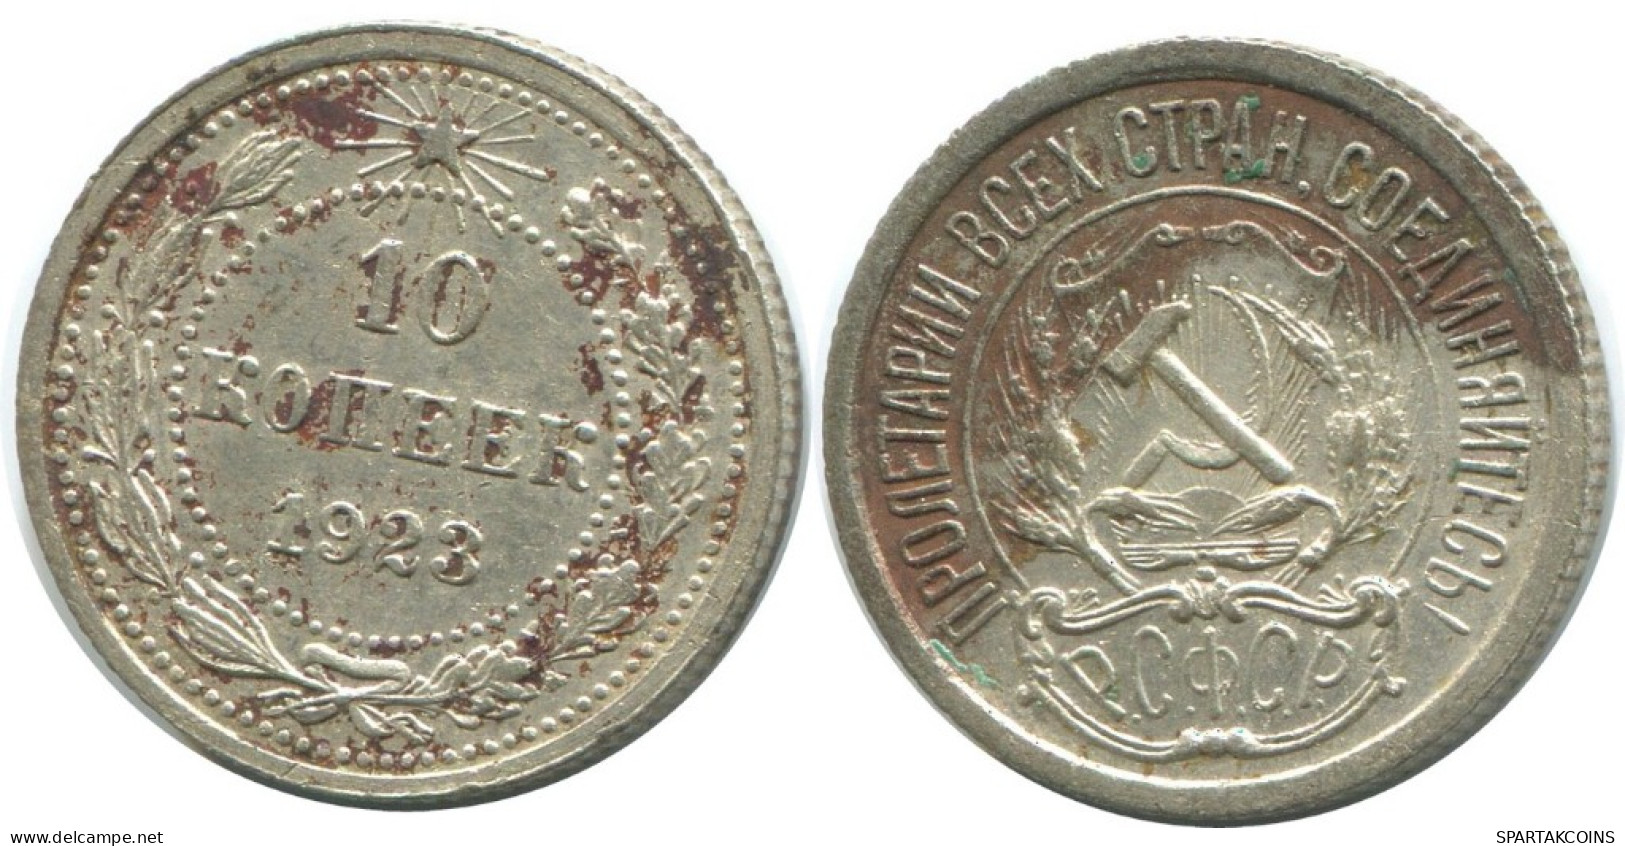 10 KOPEKS 1923 RUSSLAND RUSSIA RSFSR SILBER Münze HIGH GRADE #AE936.4.D.A - Russland